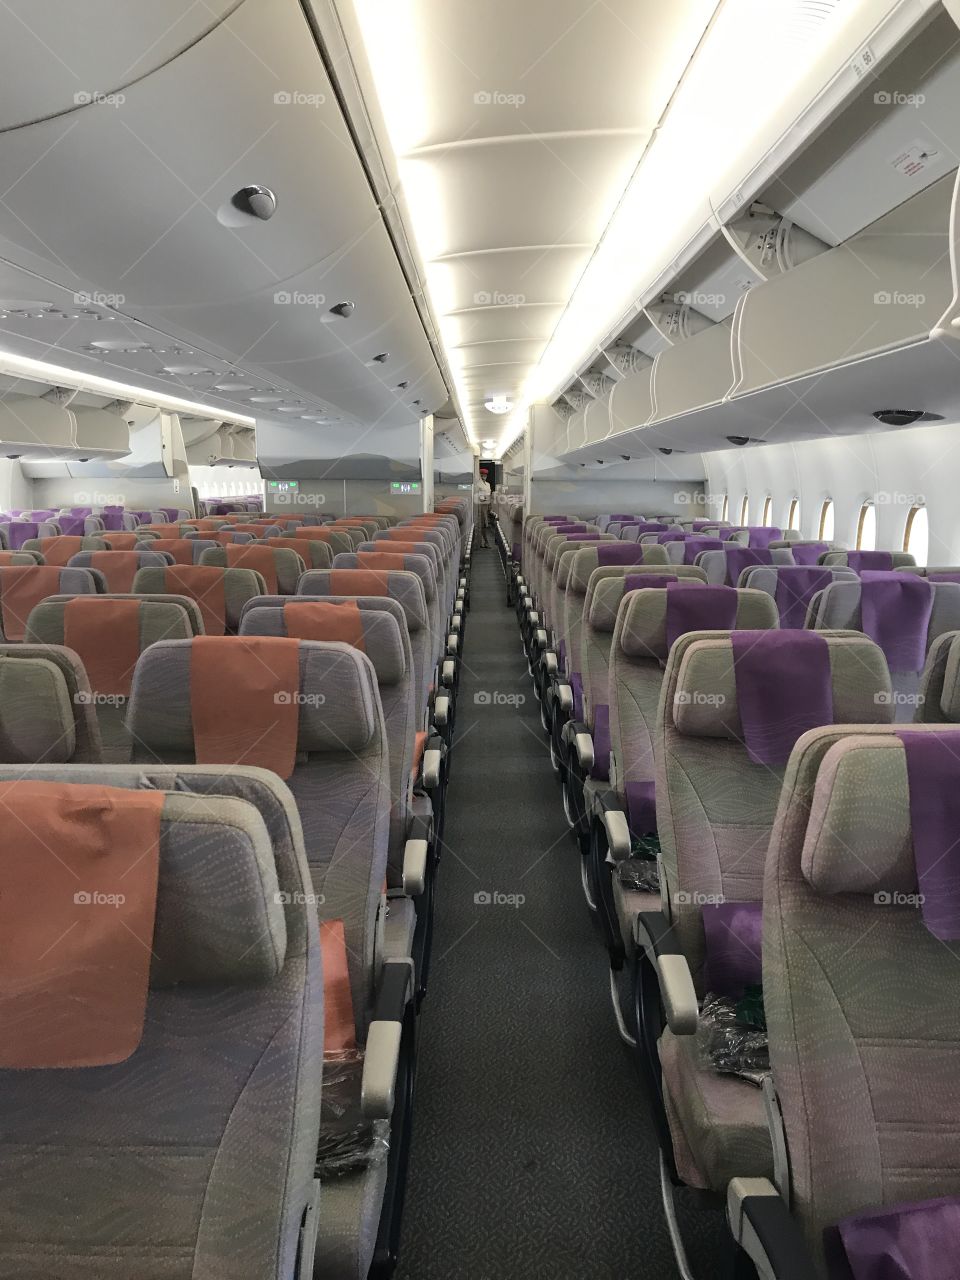 Plane interior (Emirates Airlines)